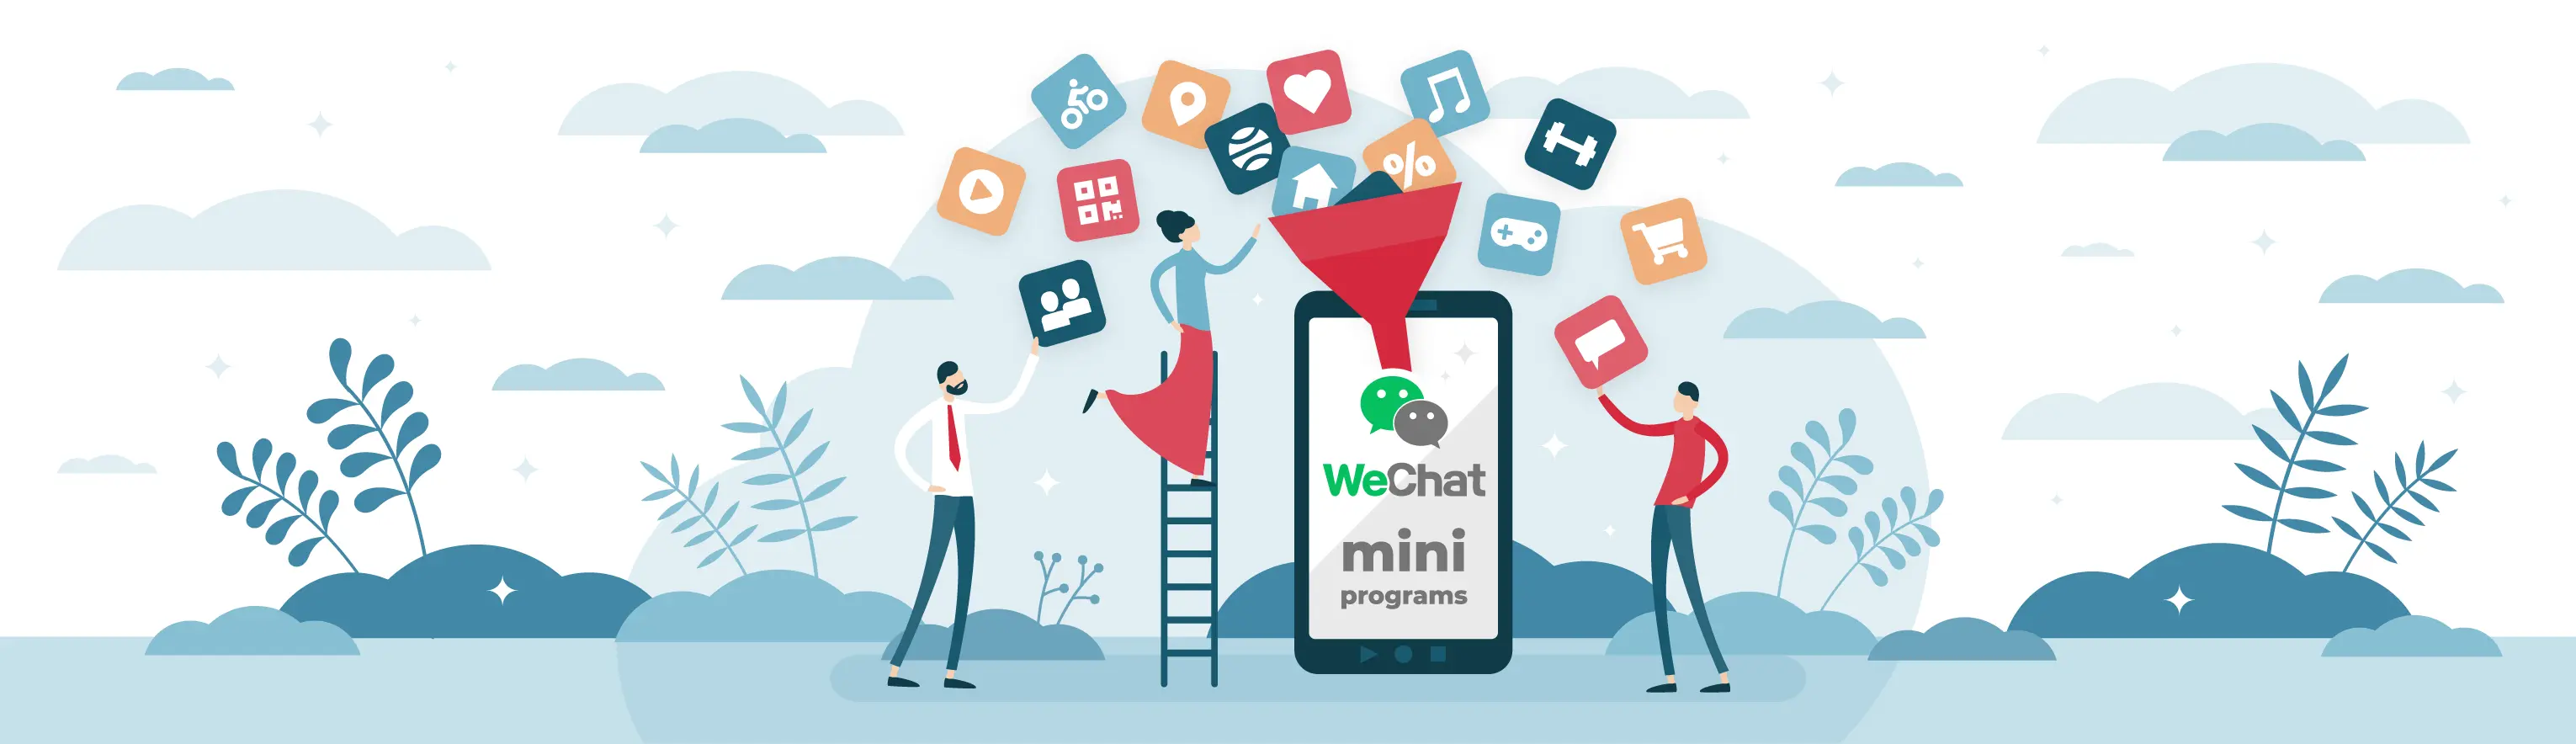 Wechat mini programs คืออะไร ทำไมถึงต้องมีเพื่อธุรกิจของคุณ